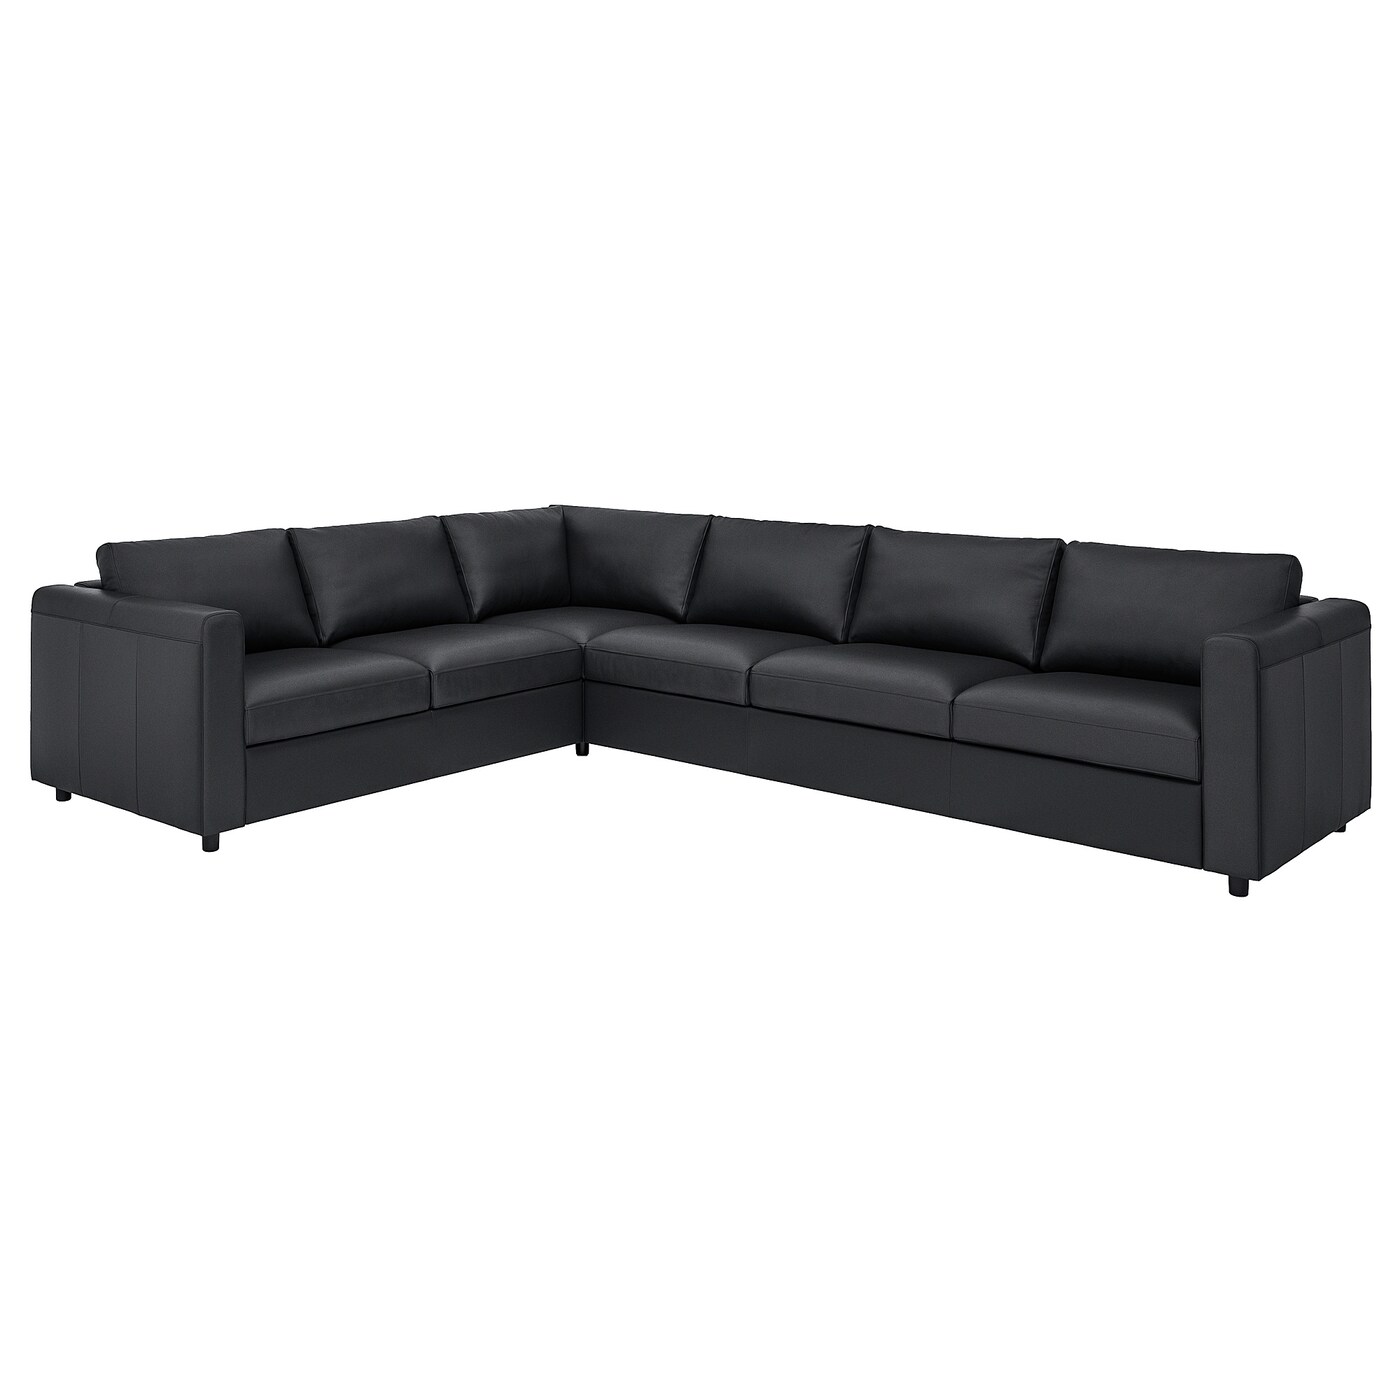 5-местный угловой диван - IKEA VIMLE, 319/249х98х80 см, черный, кожа, ВИМЛЕ ИКЕА